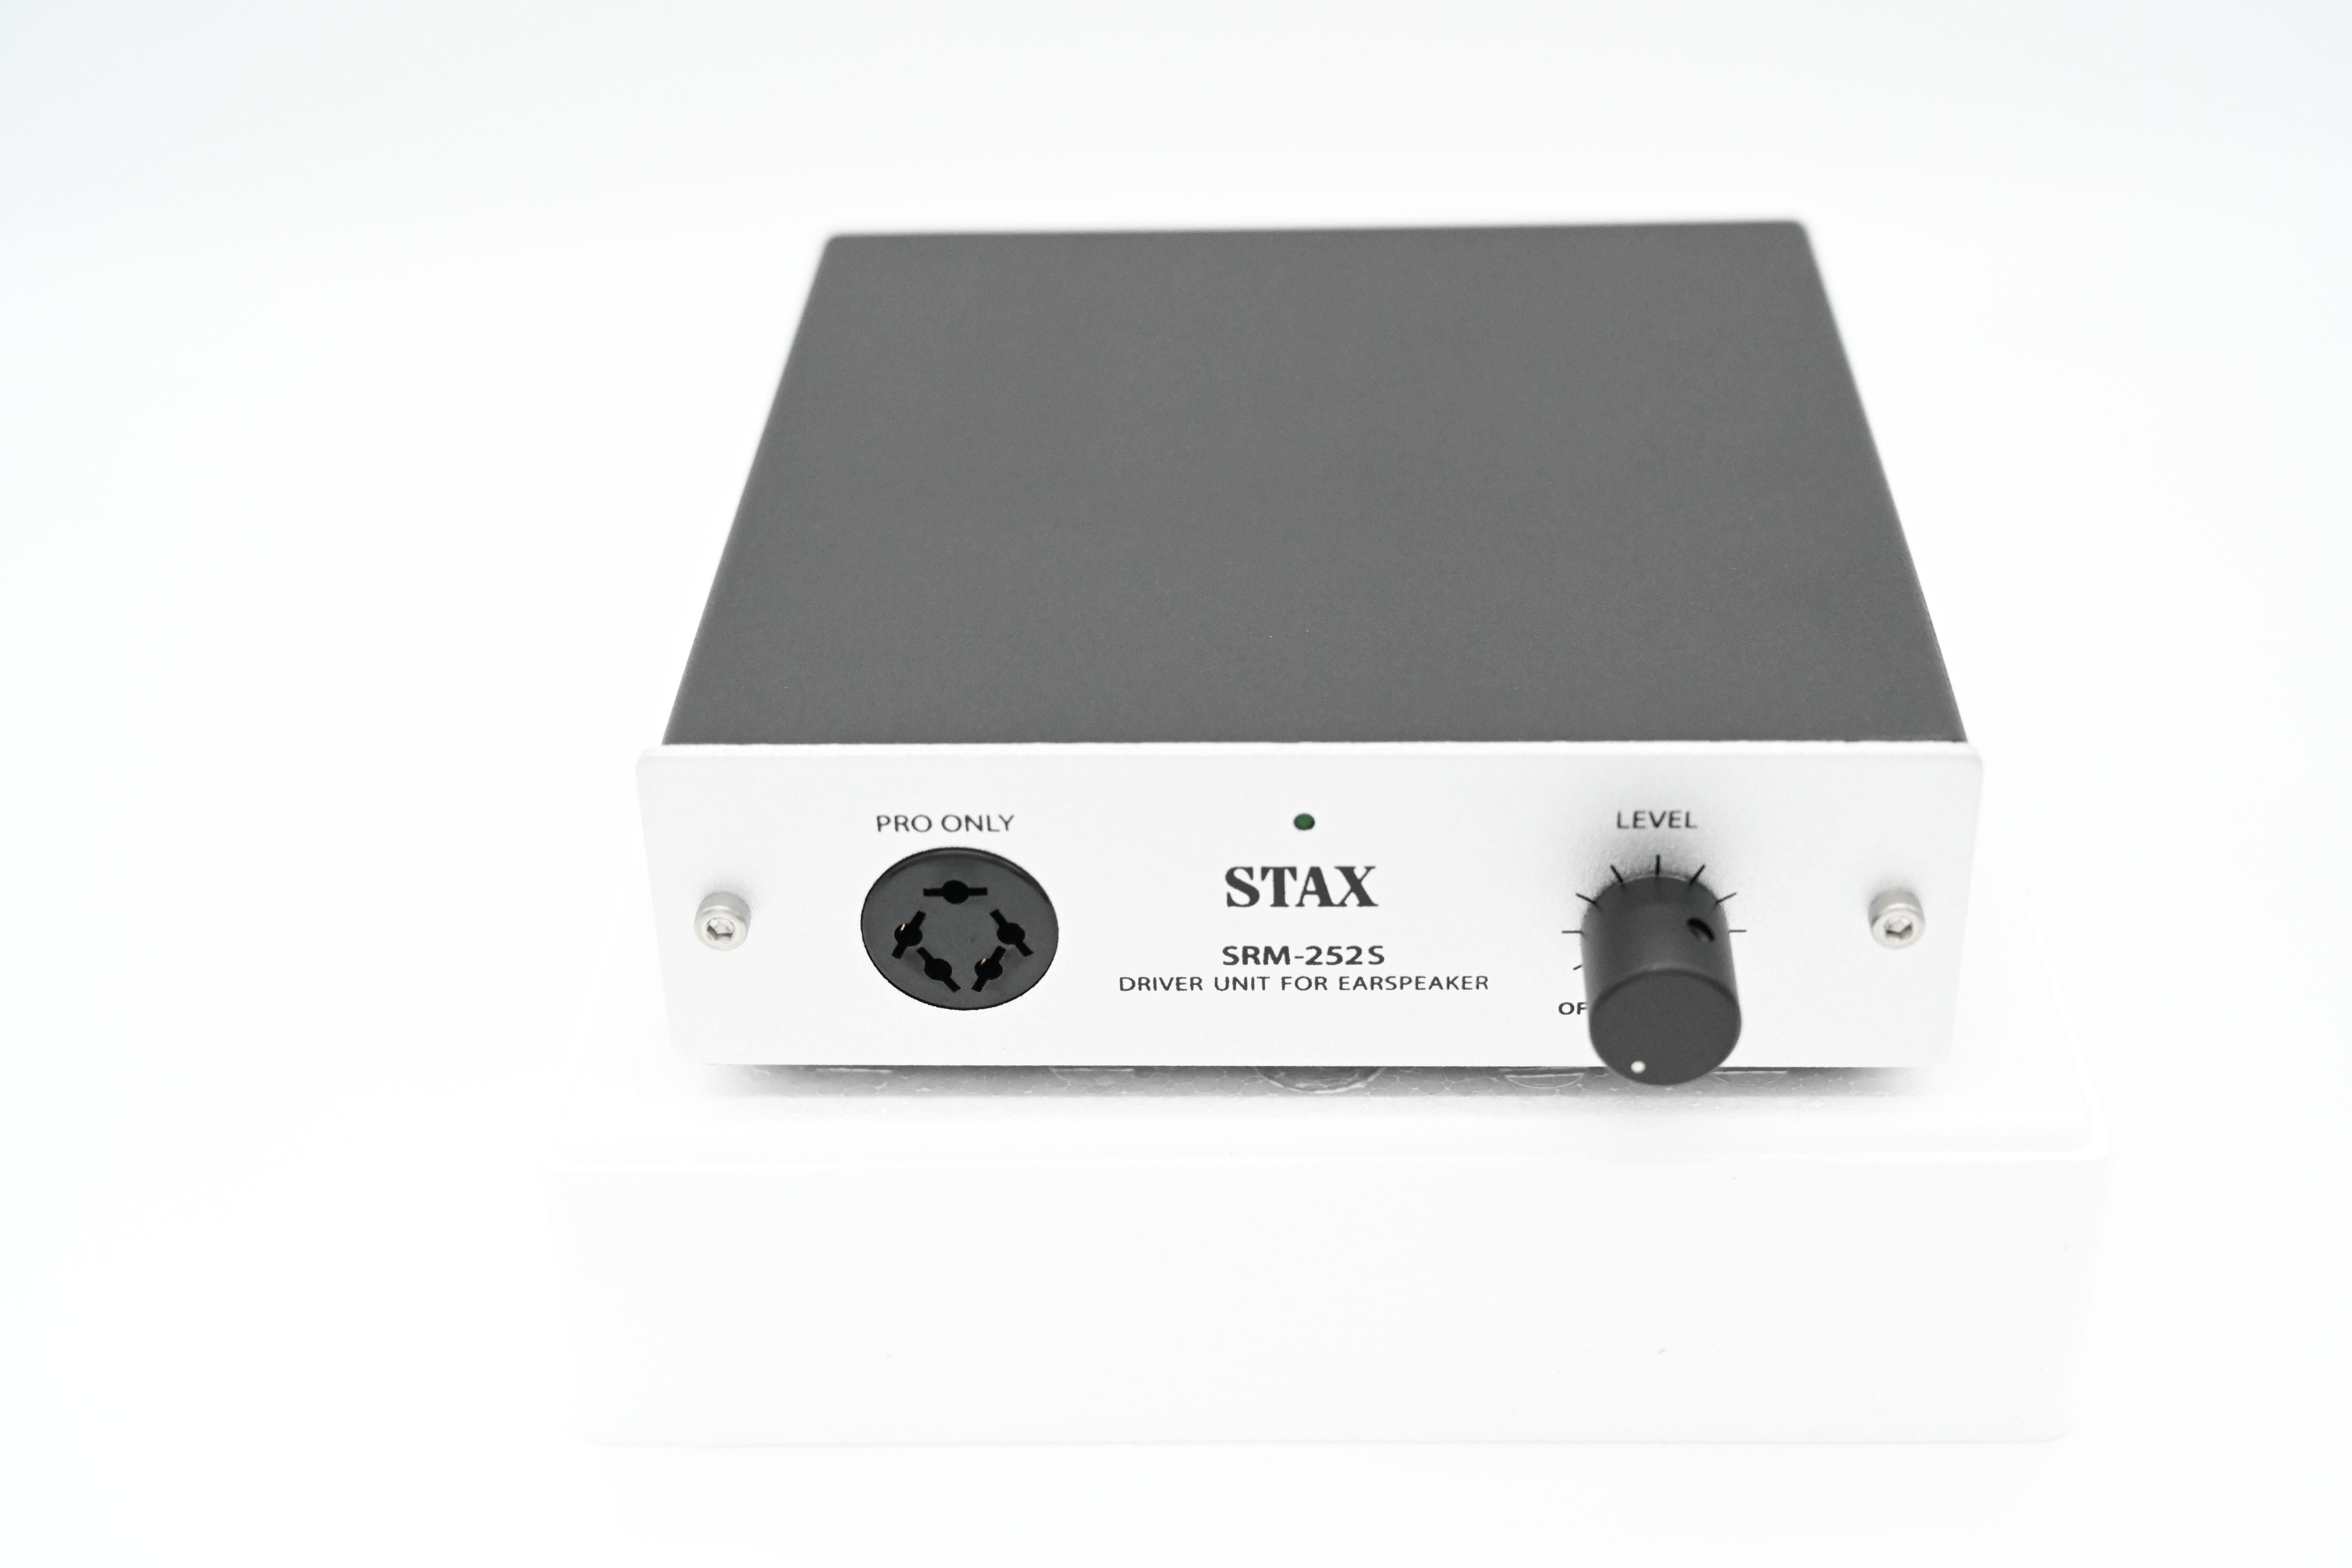 STAX SRS-3100 | オーディオサブスク ONZO